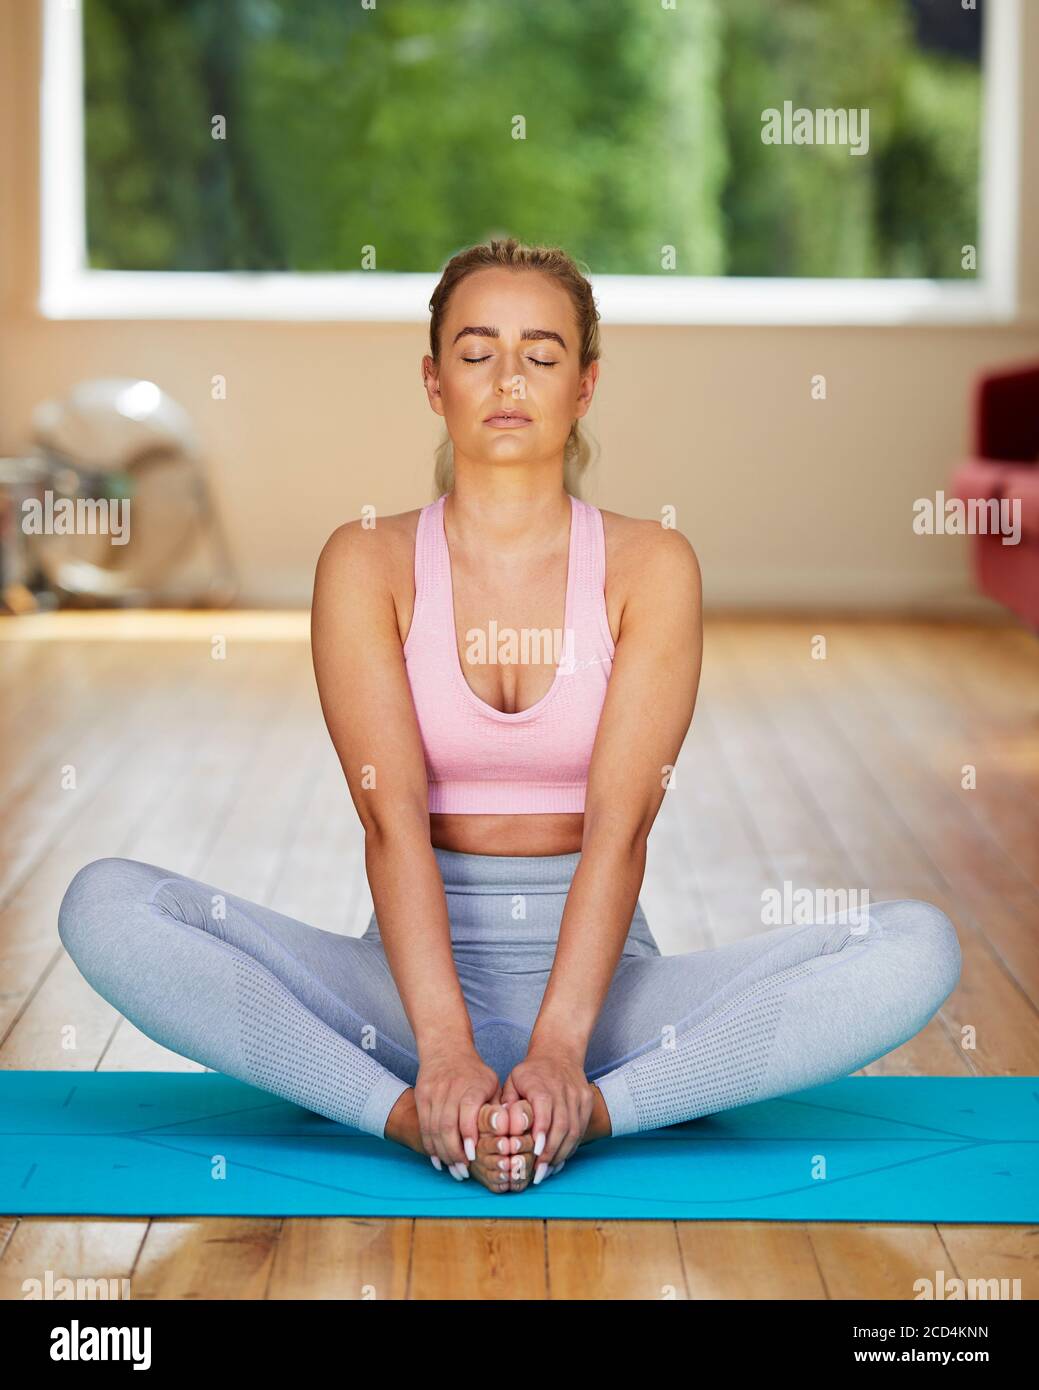 Jolie fille blonde pratiquant le yoga Banque D'Images